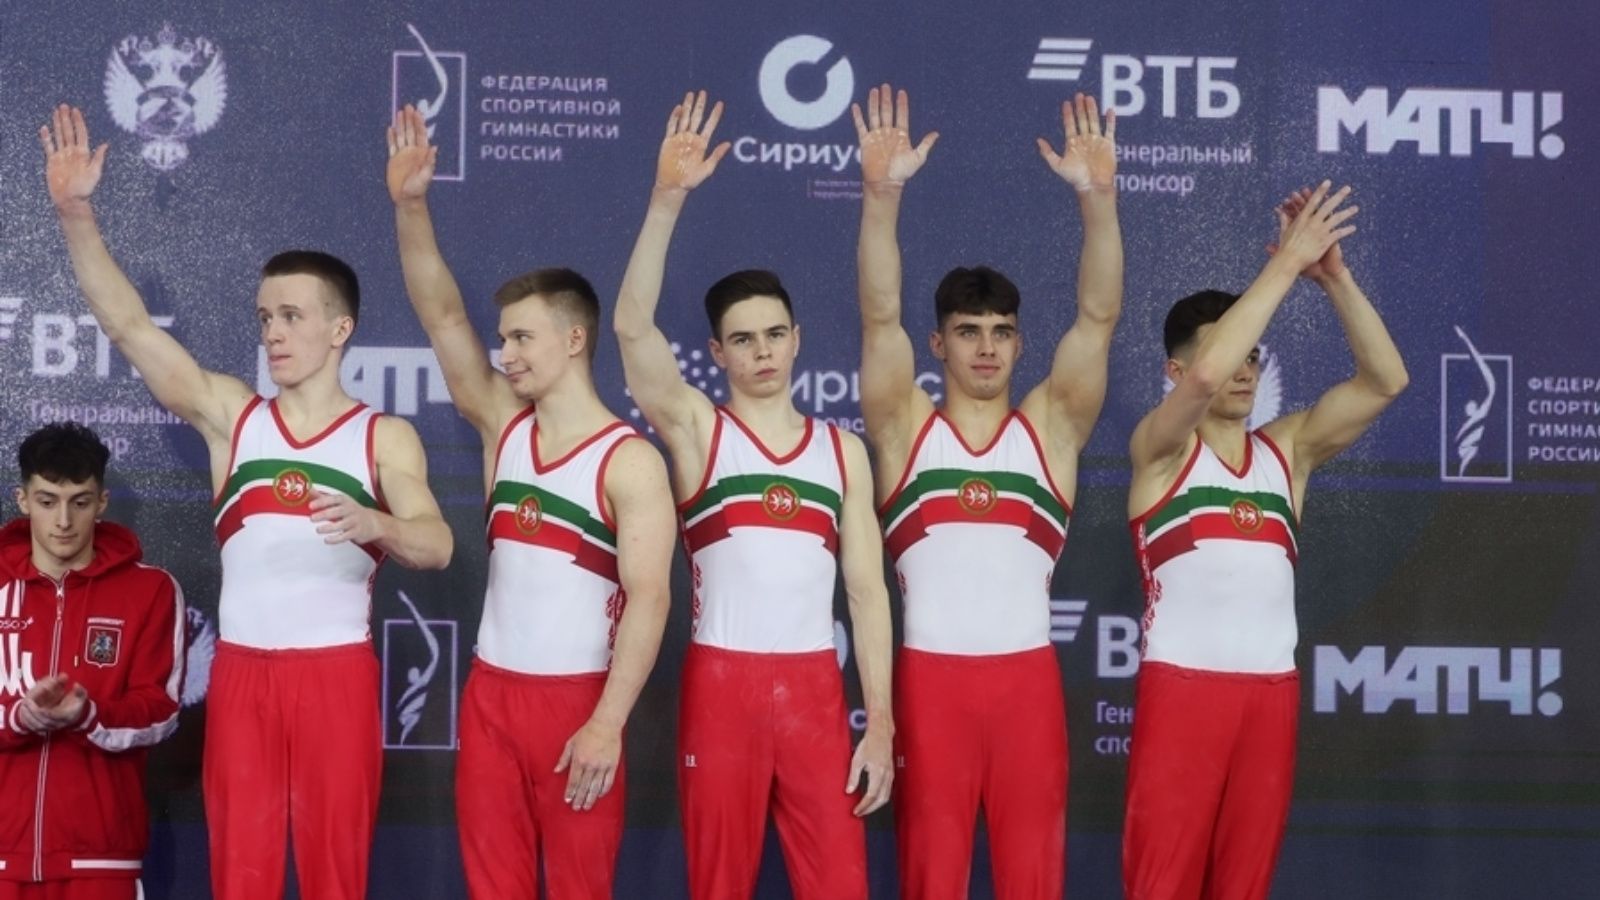 Гимнасты из Татарстана взяли бронзу в чемпионате России